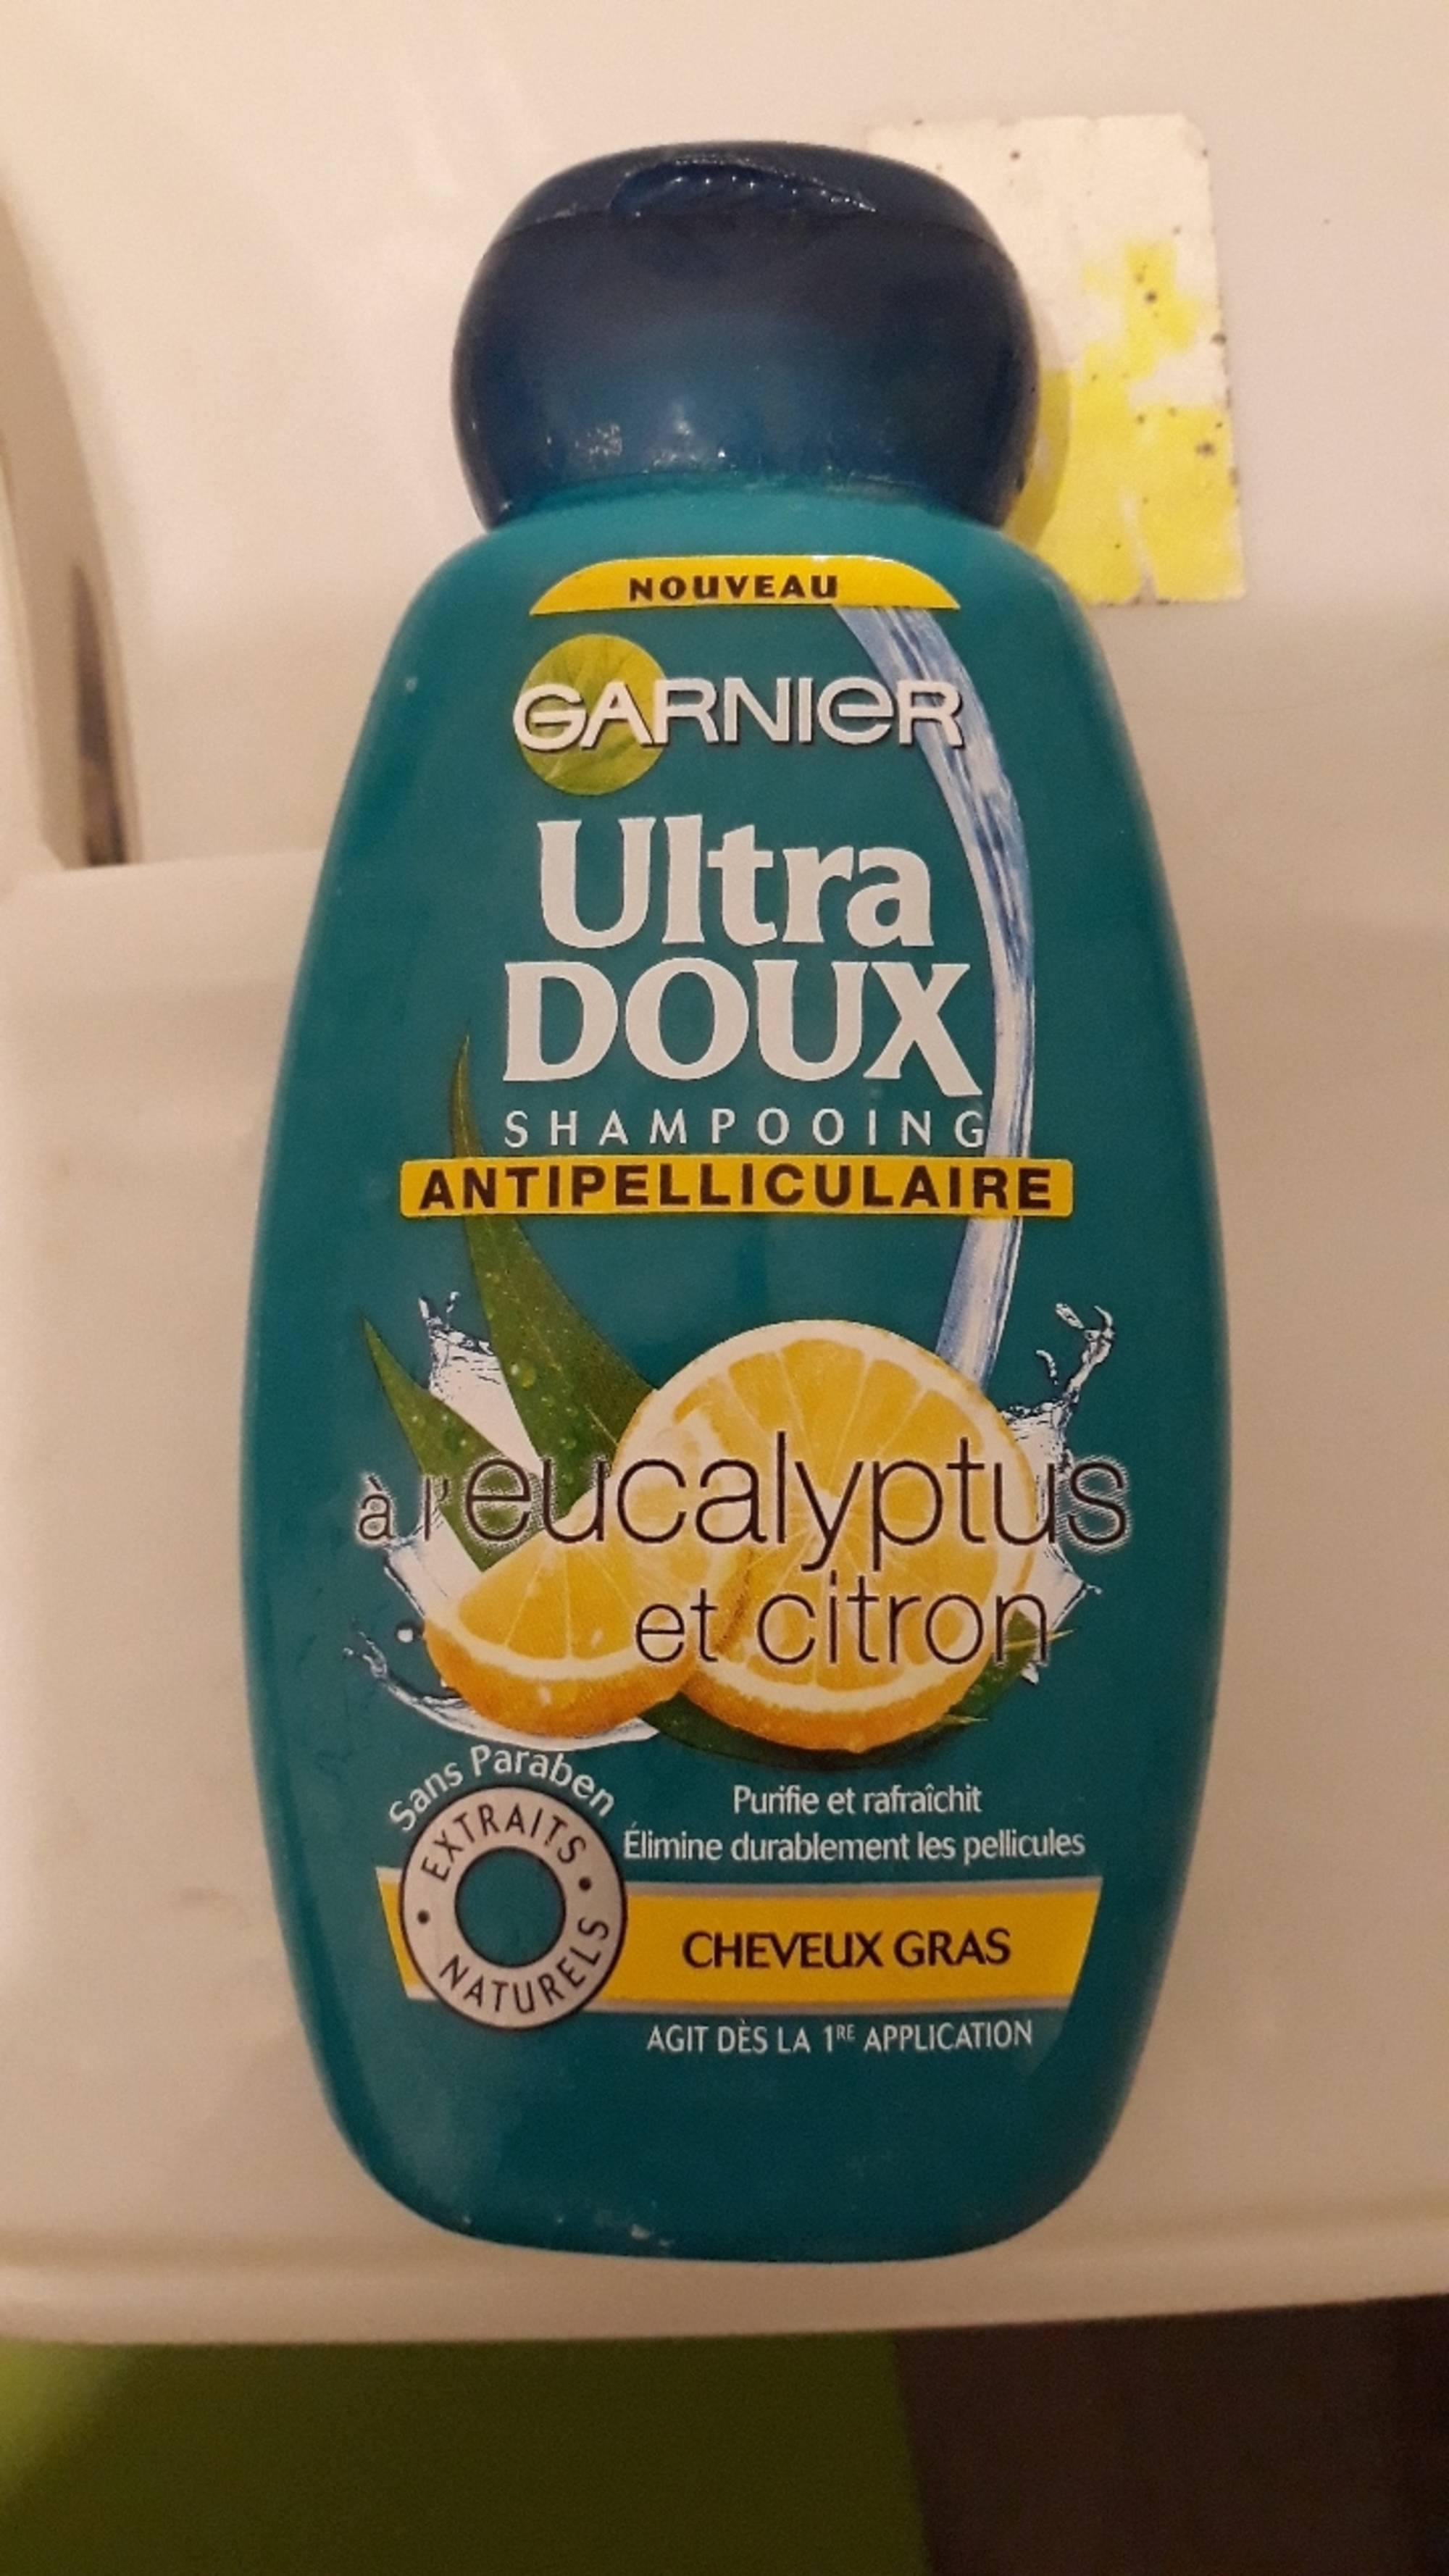 GARNIER - Ultra doux - Shampooing antipelliculaire eucalyptus et citron